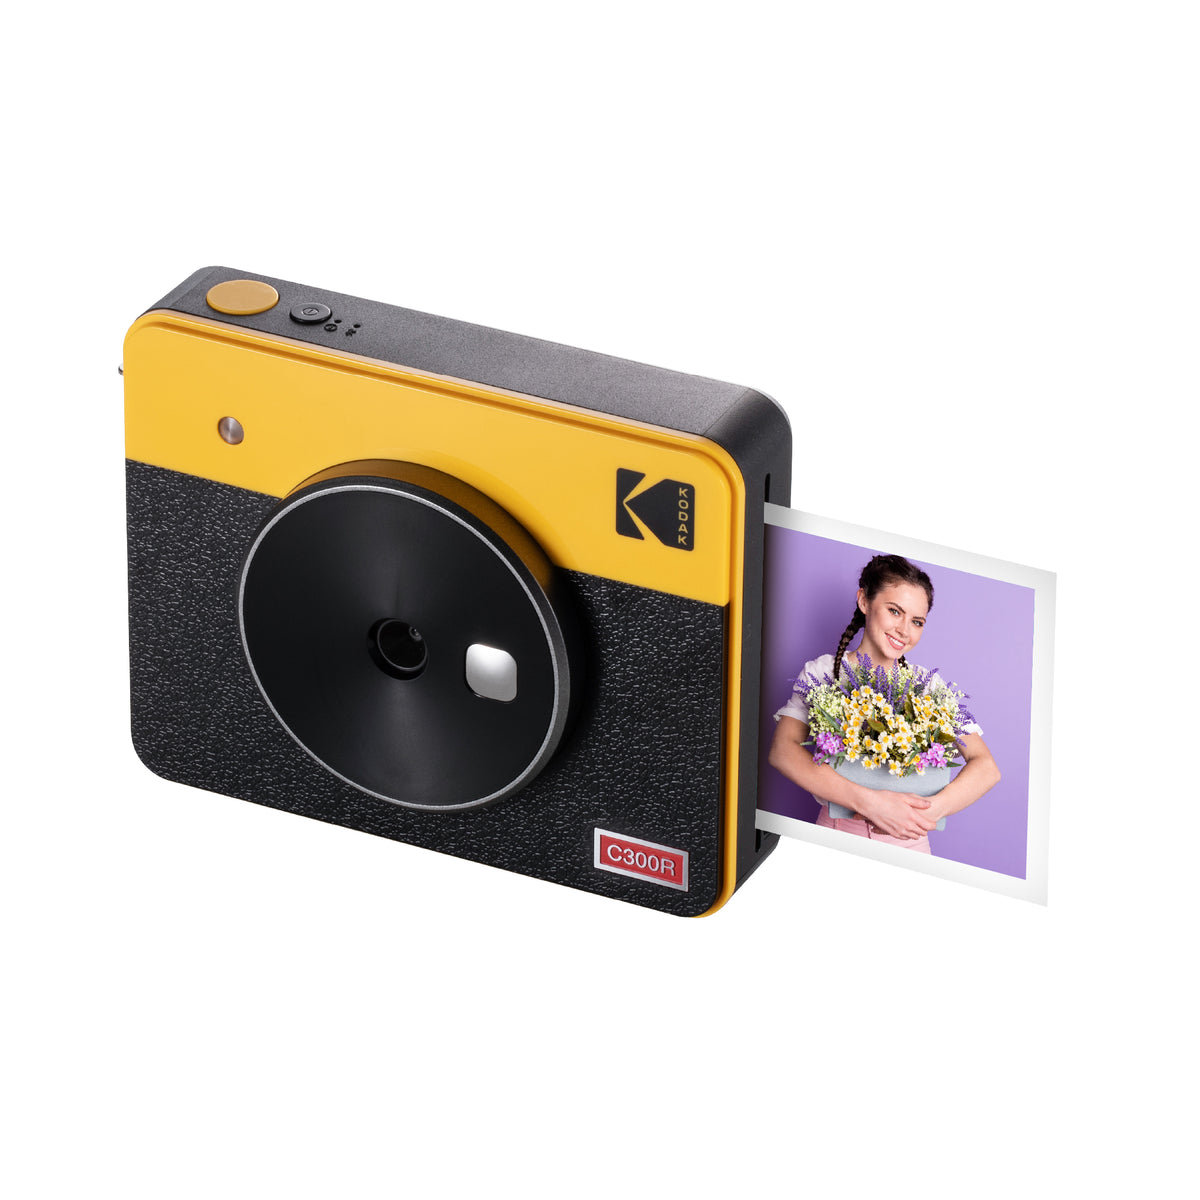 Kodak Mini 2 Retro 2-in-1 Portable Instant Camera & Photo Printer